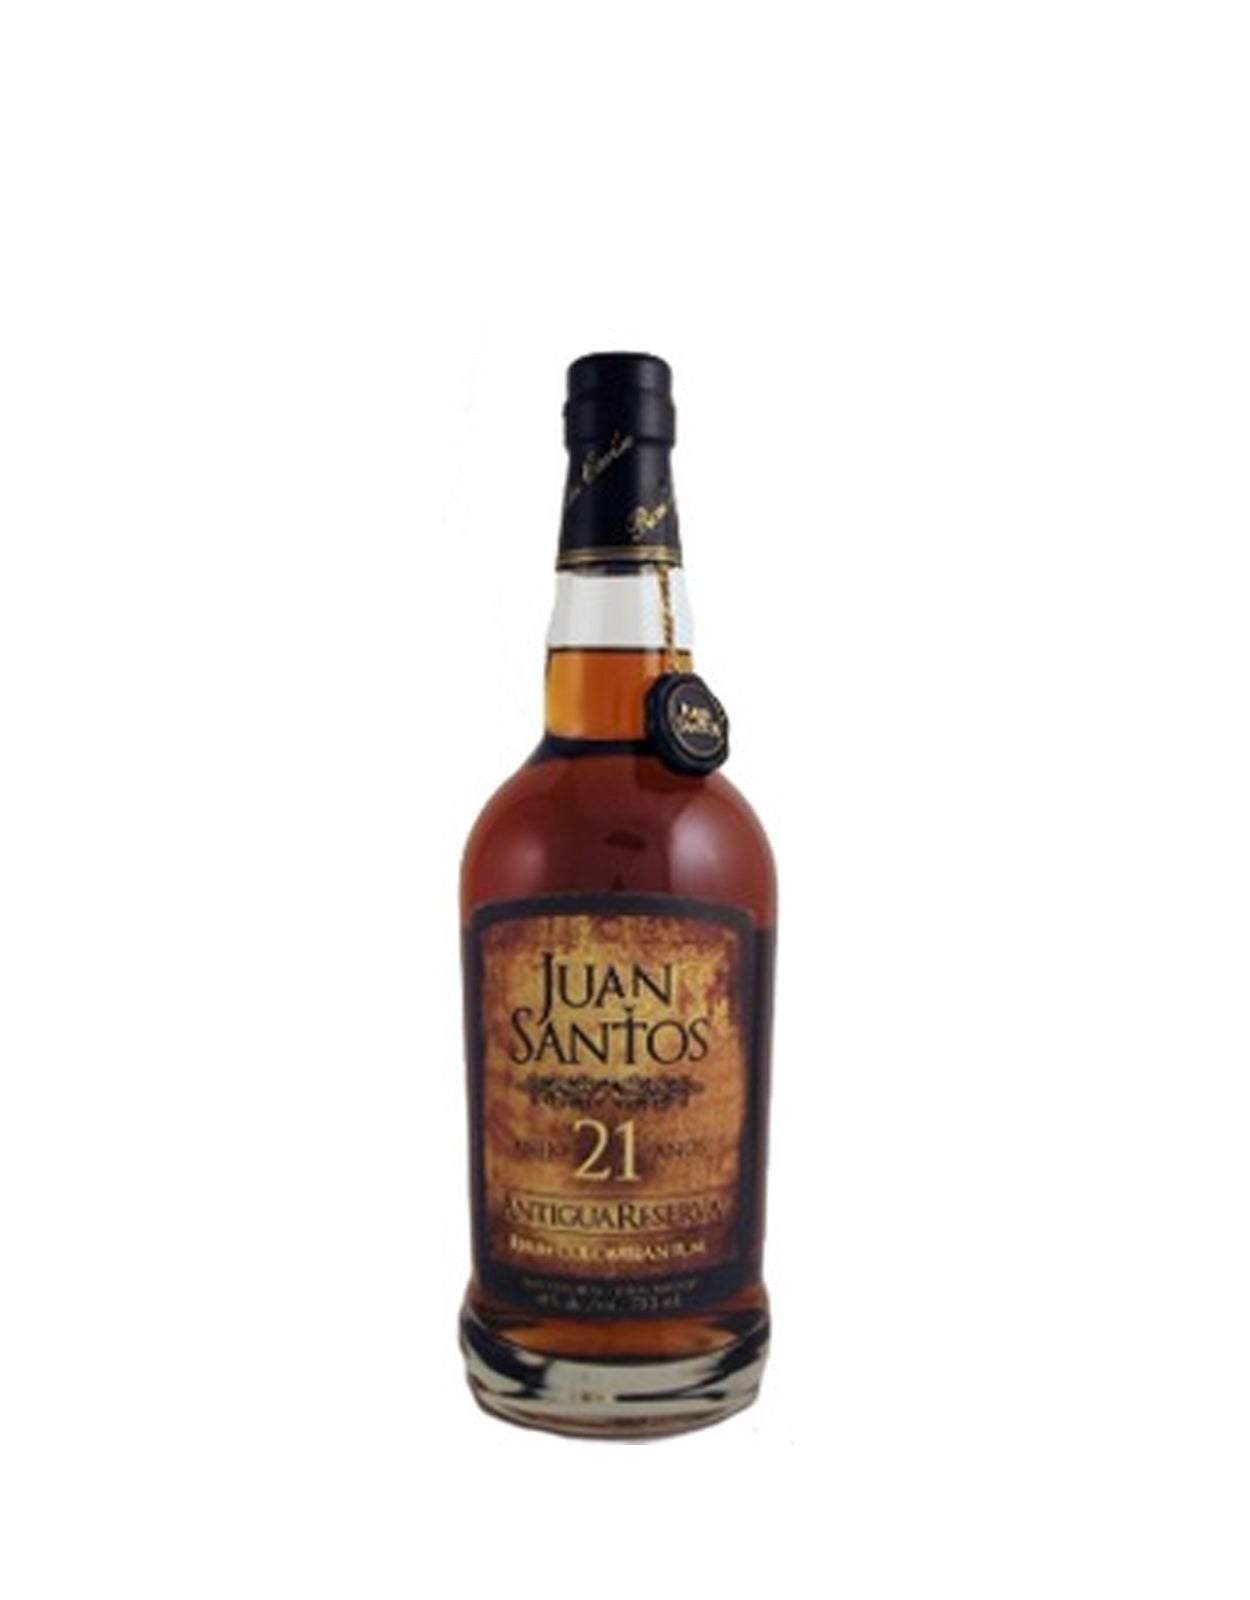 Juan Santos Antigua Reserve 21 Year Old Rum